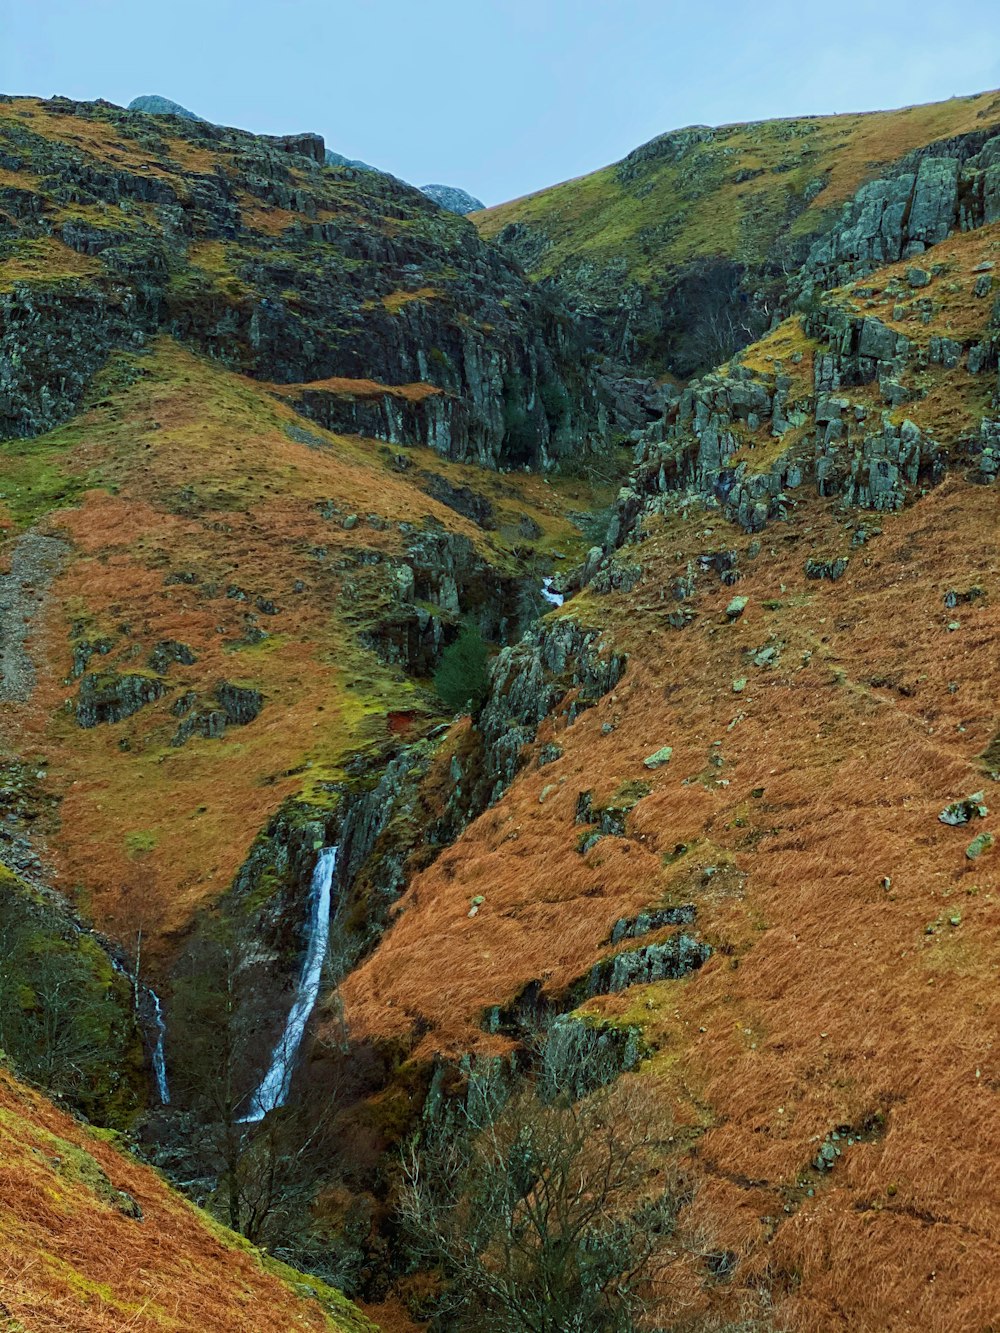 cachoeiras no meio de montanhas marrons e verdes